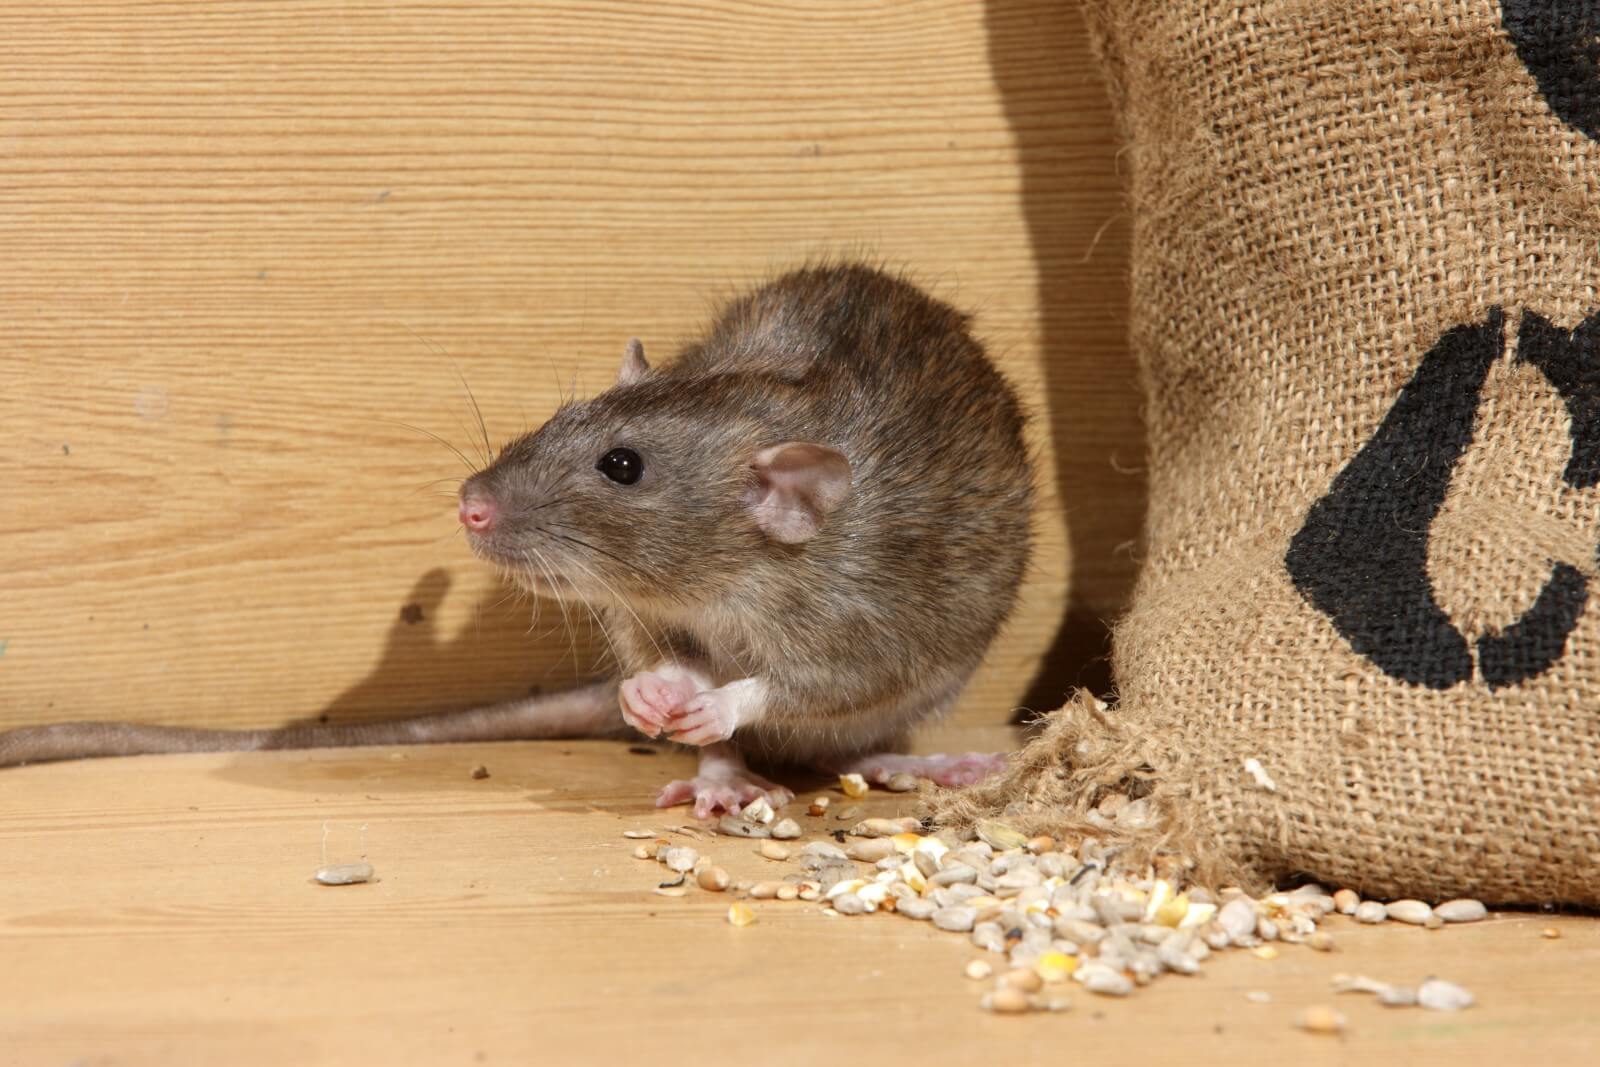 Народные средства от крыс в частном доме, способы борьбы с помощью ловушек, отравления